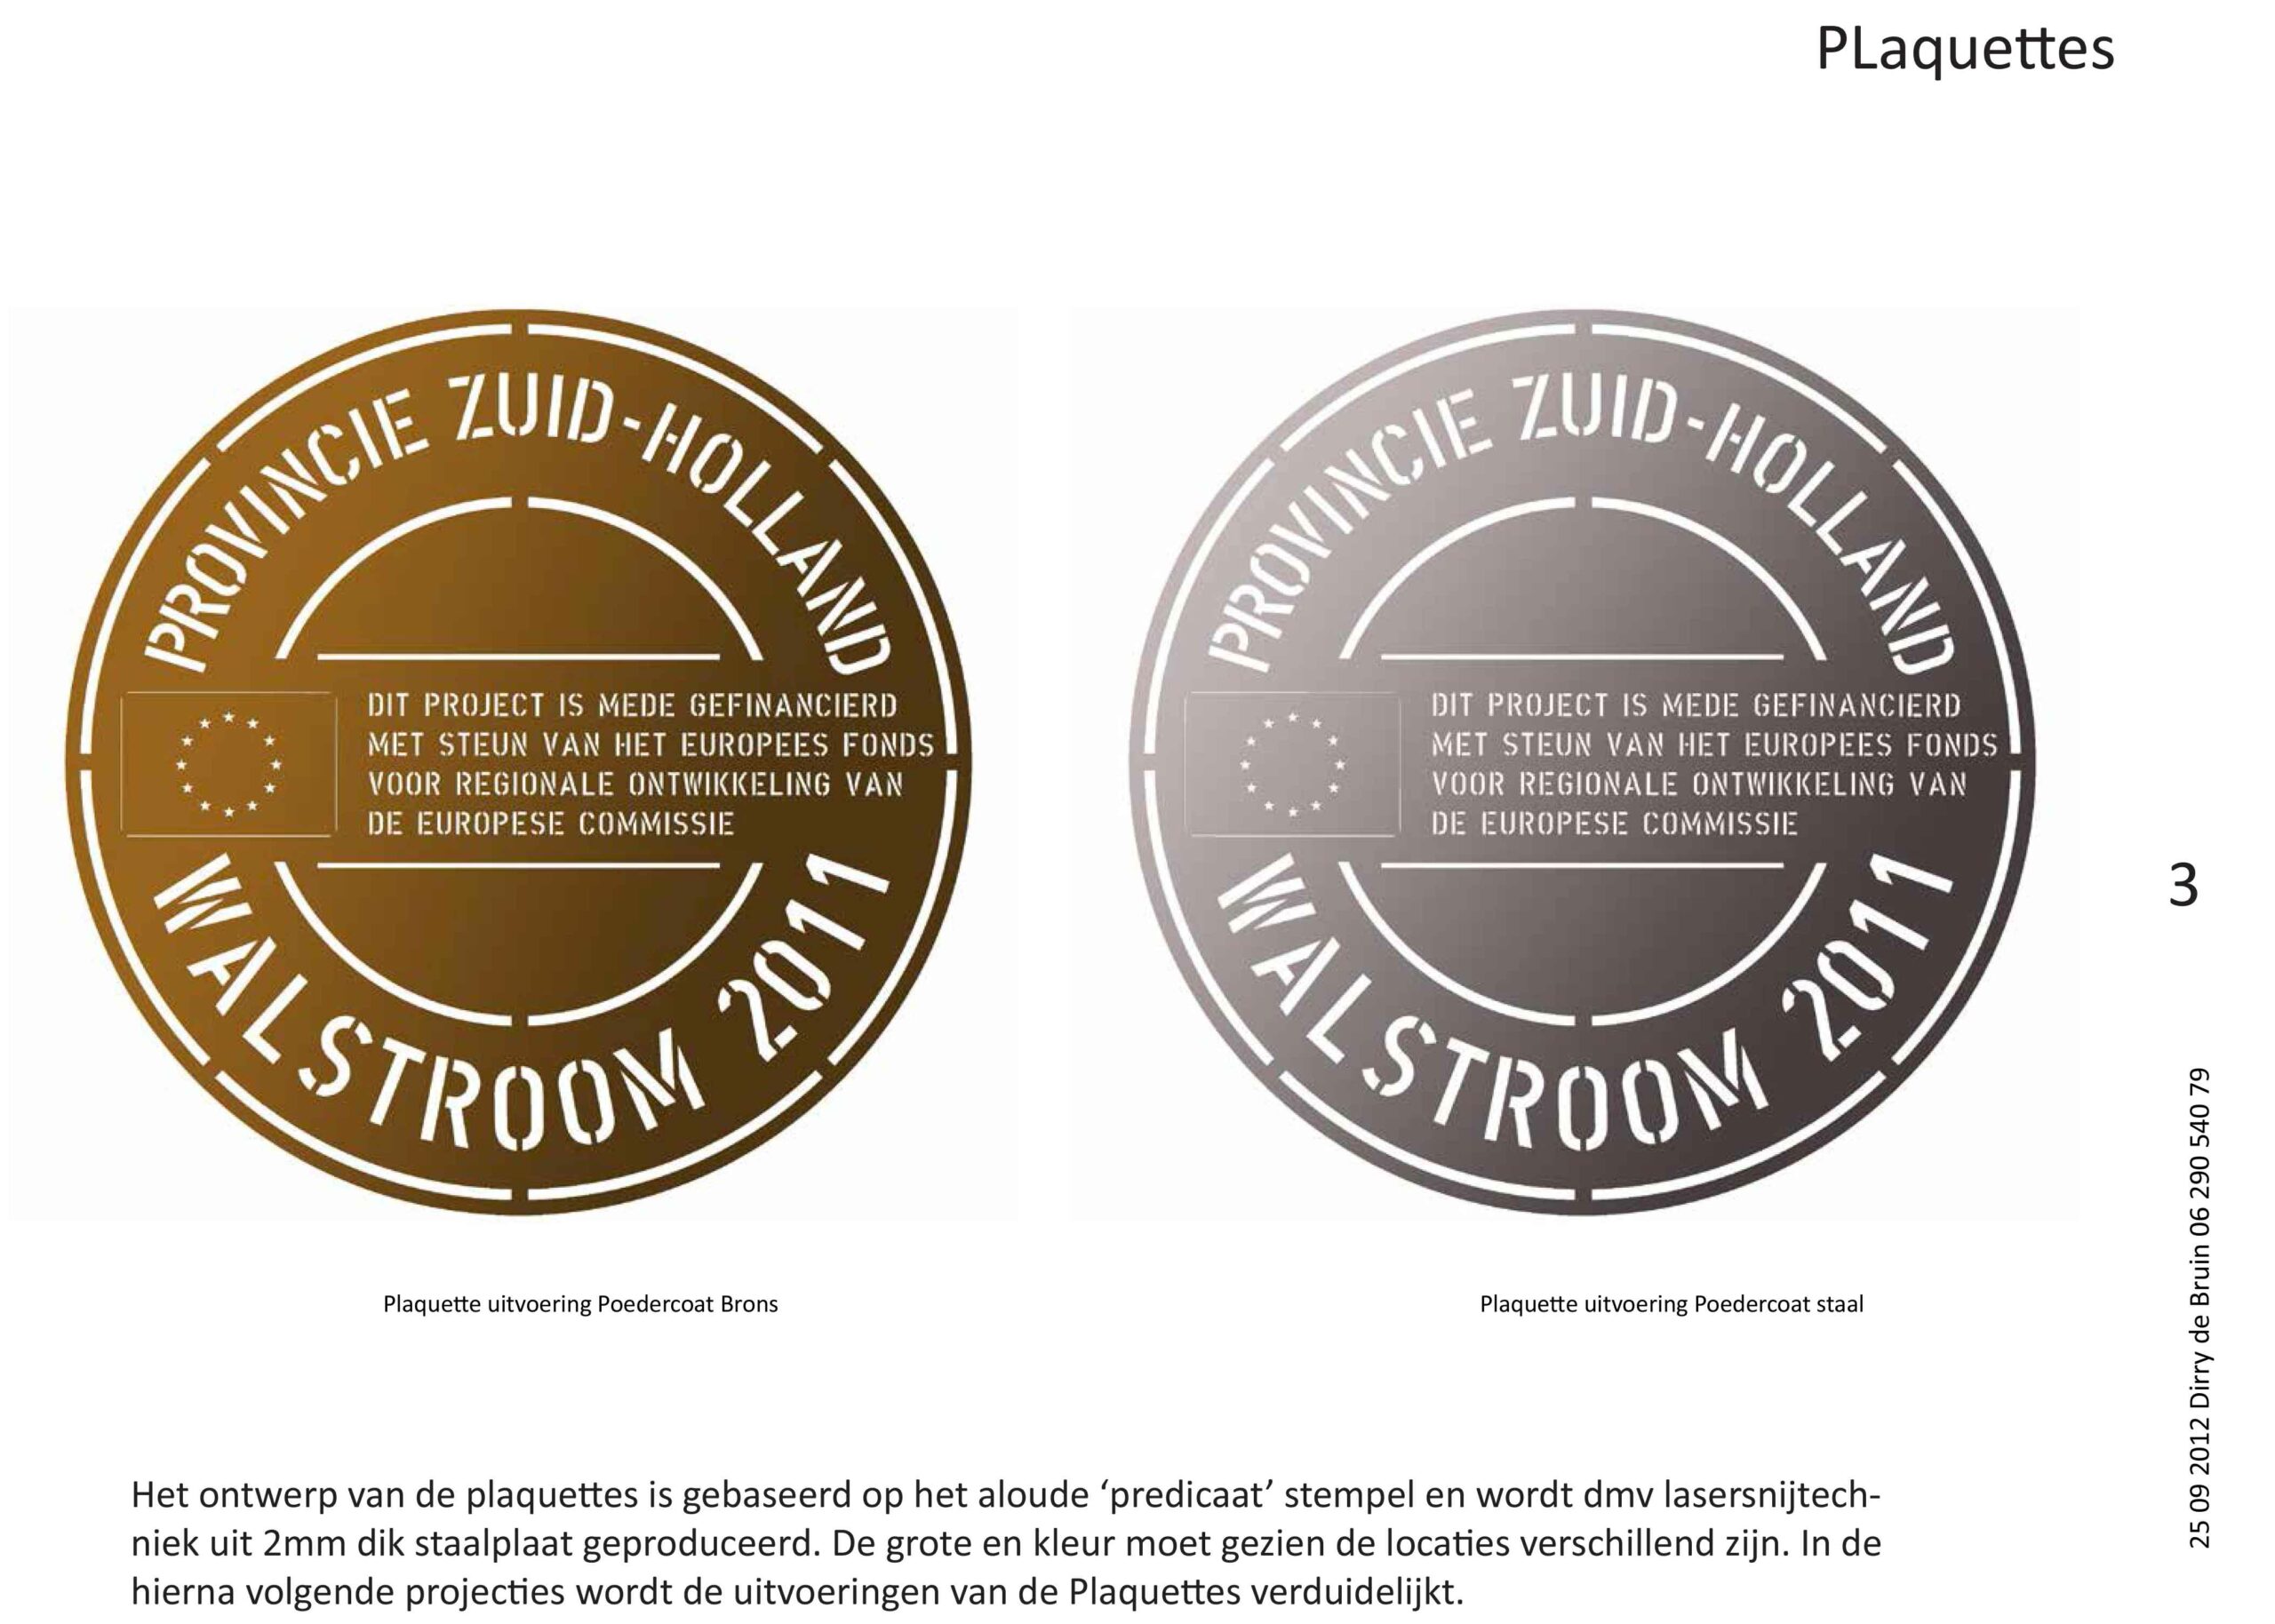 DirryOntwerpt 0ntwerp walstroom subsidie Plaquettes op 3 locaties Provincie Zuid Holland 3